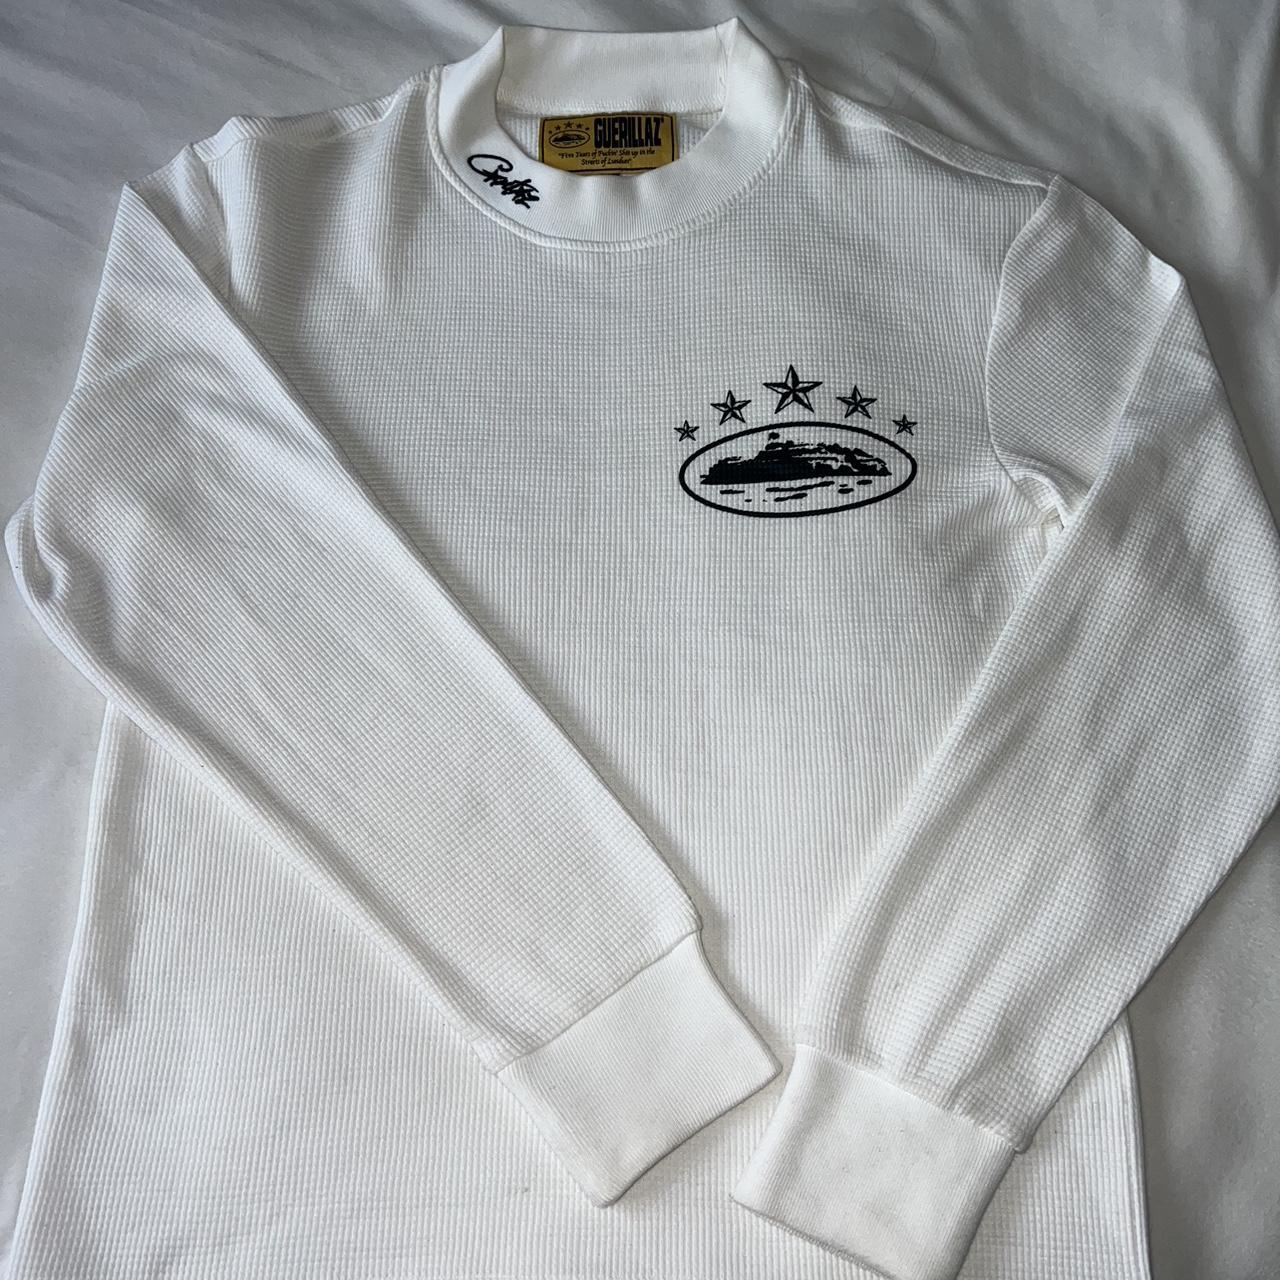 Corteiz White Sweatshirt/Jumper Perfect... - Depop